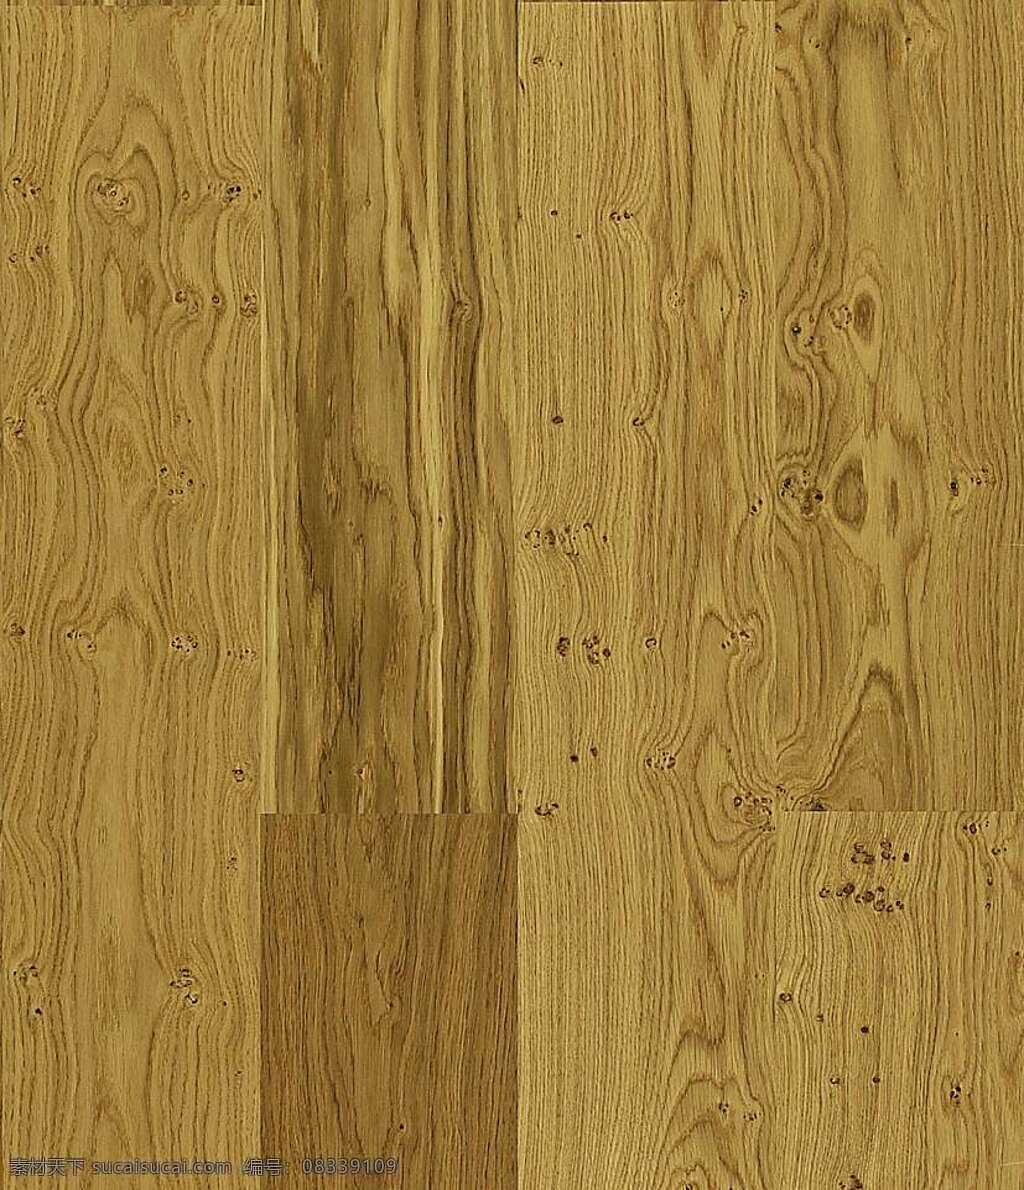 511 木地板 贴图 装修 效果图 木地板贴图 木地板效果图 室内设计 木地板材质 地板设计素材 装饰素材 室内装饰用图